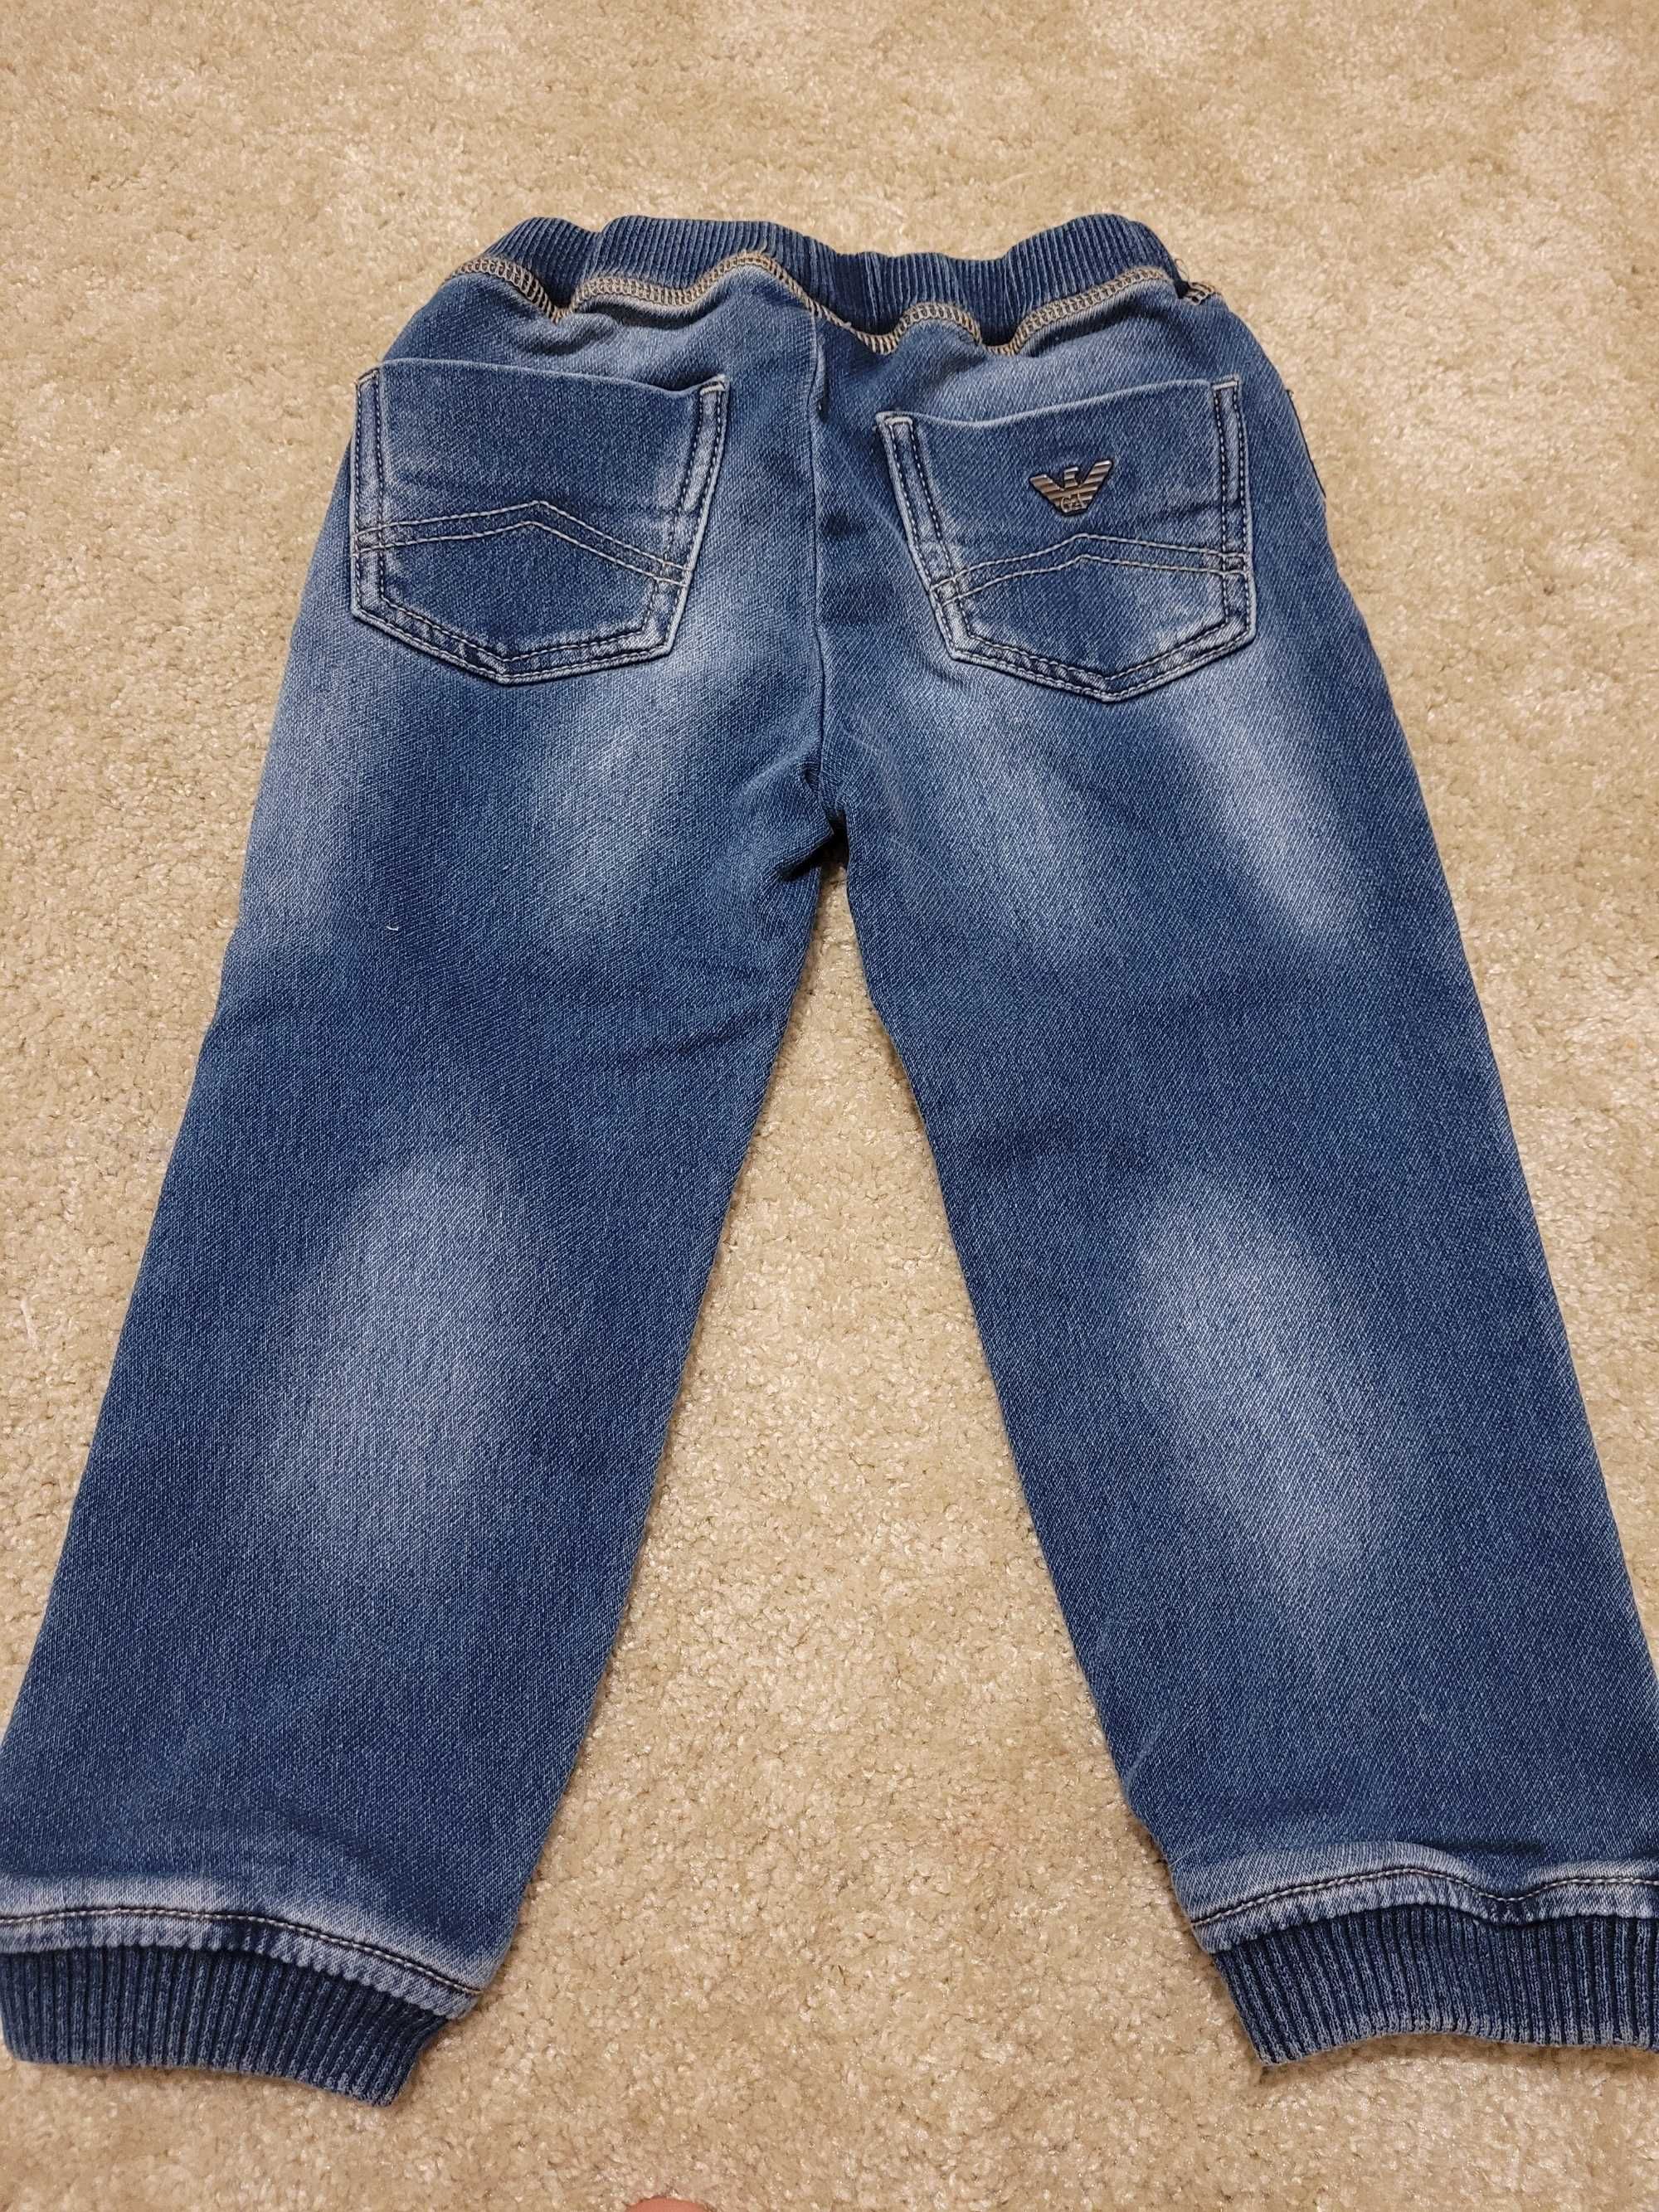 Spodnie Armani Baby jeansy 18m